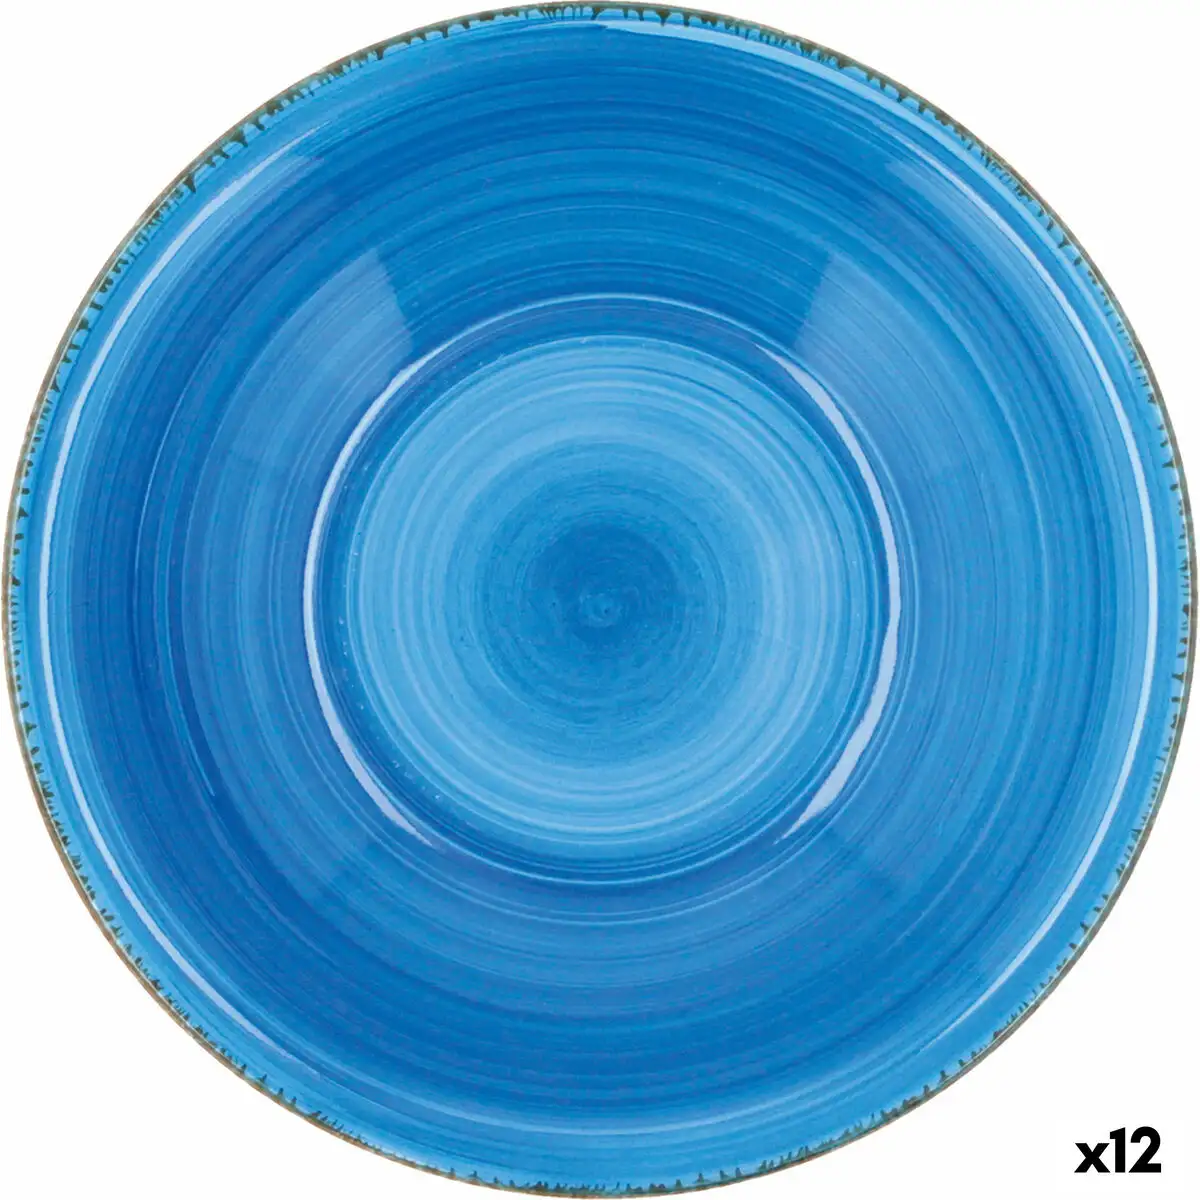 Assiette a dessert quid vita ceramique bleu 19 cm 12 unites _7719. DIAYTAR SENEGAL - Là où Chaque Achat a du Sens. Explorez notre gamme et choisissez des produits qui racontent une histoire, votre histoire.